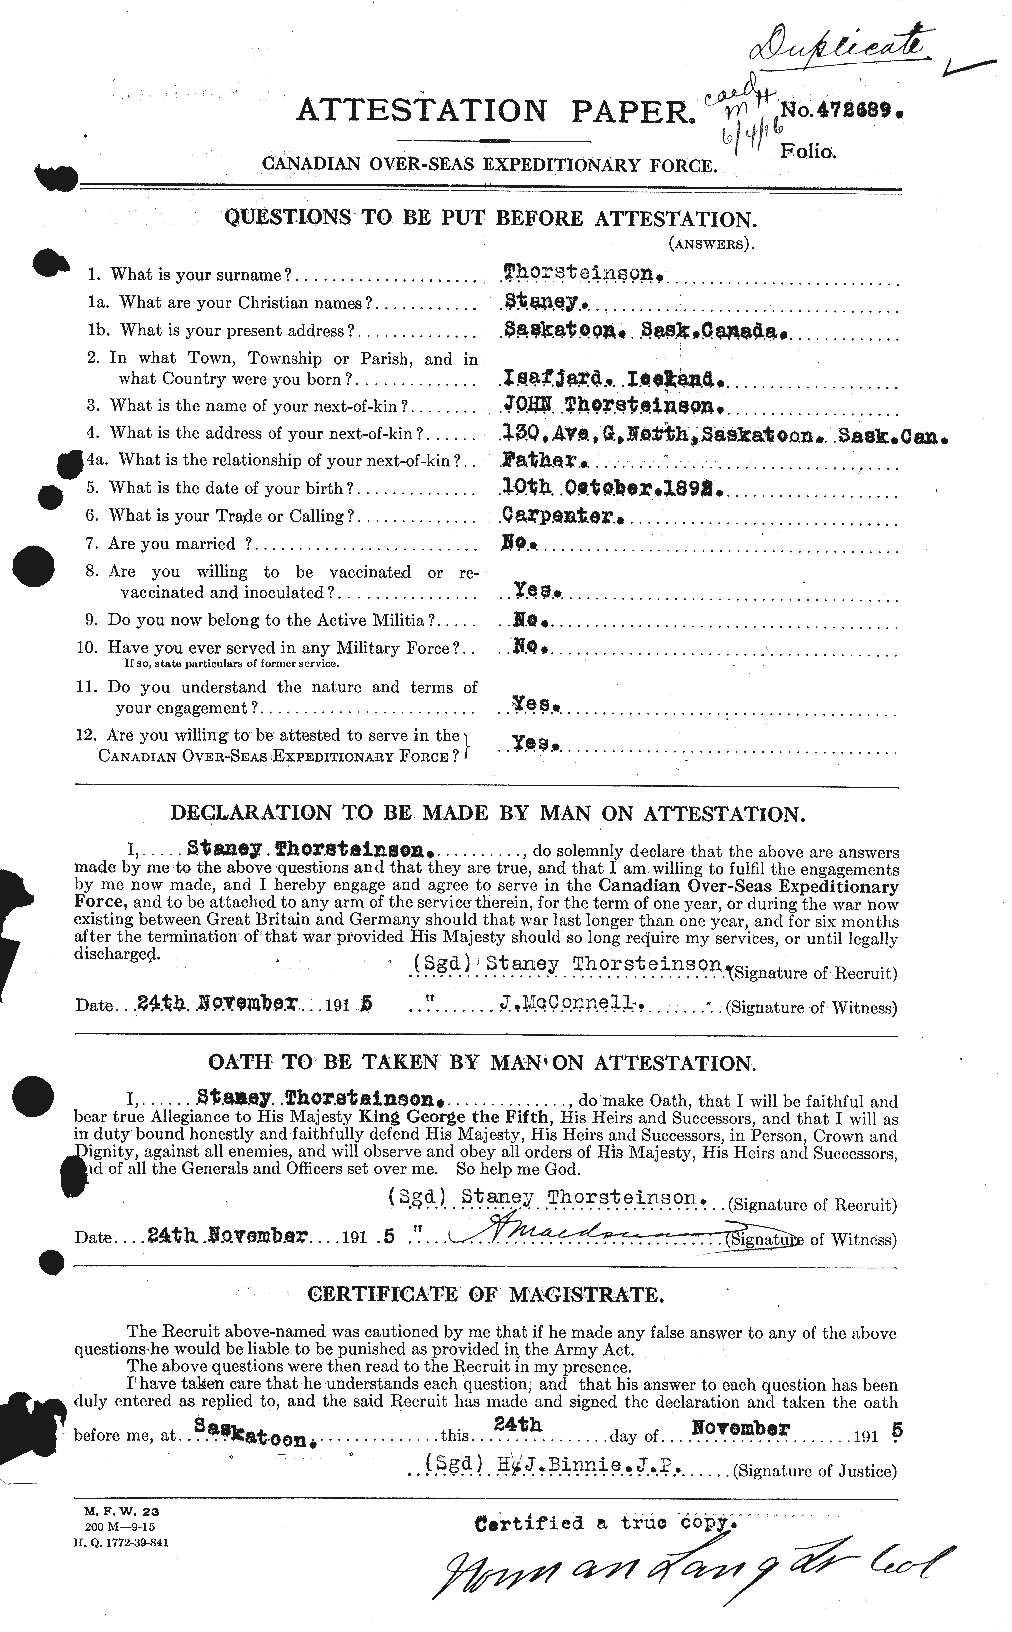 Dossiers du Personnel de la Première Guerre mondiale - CEC 633867a